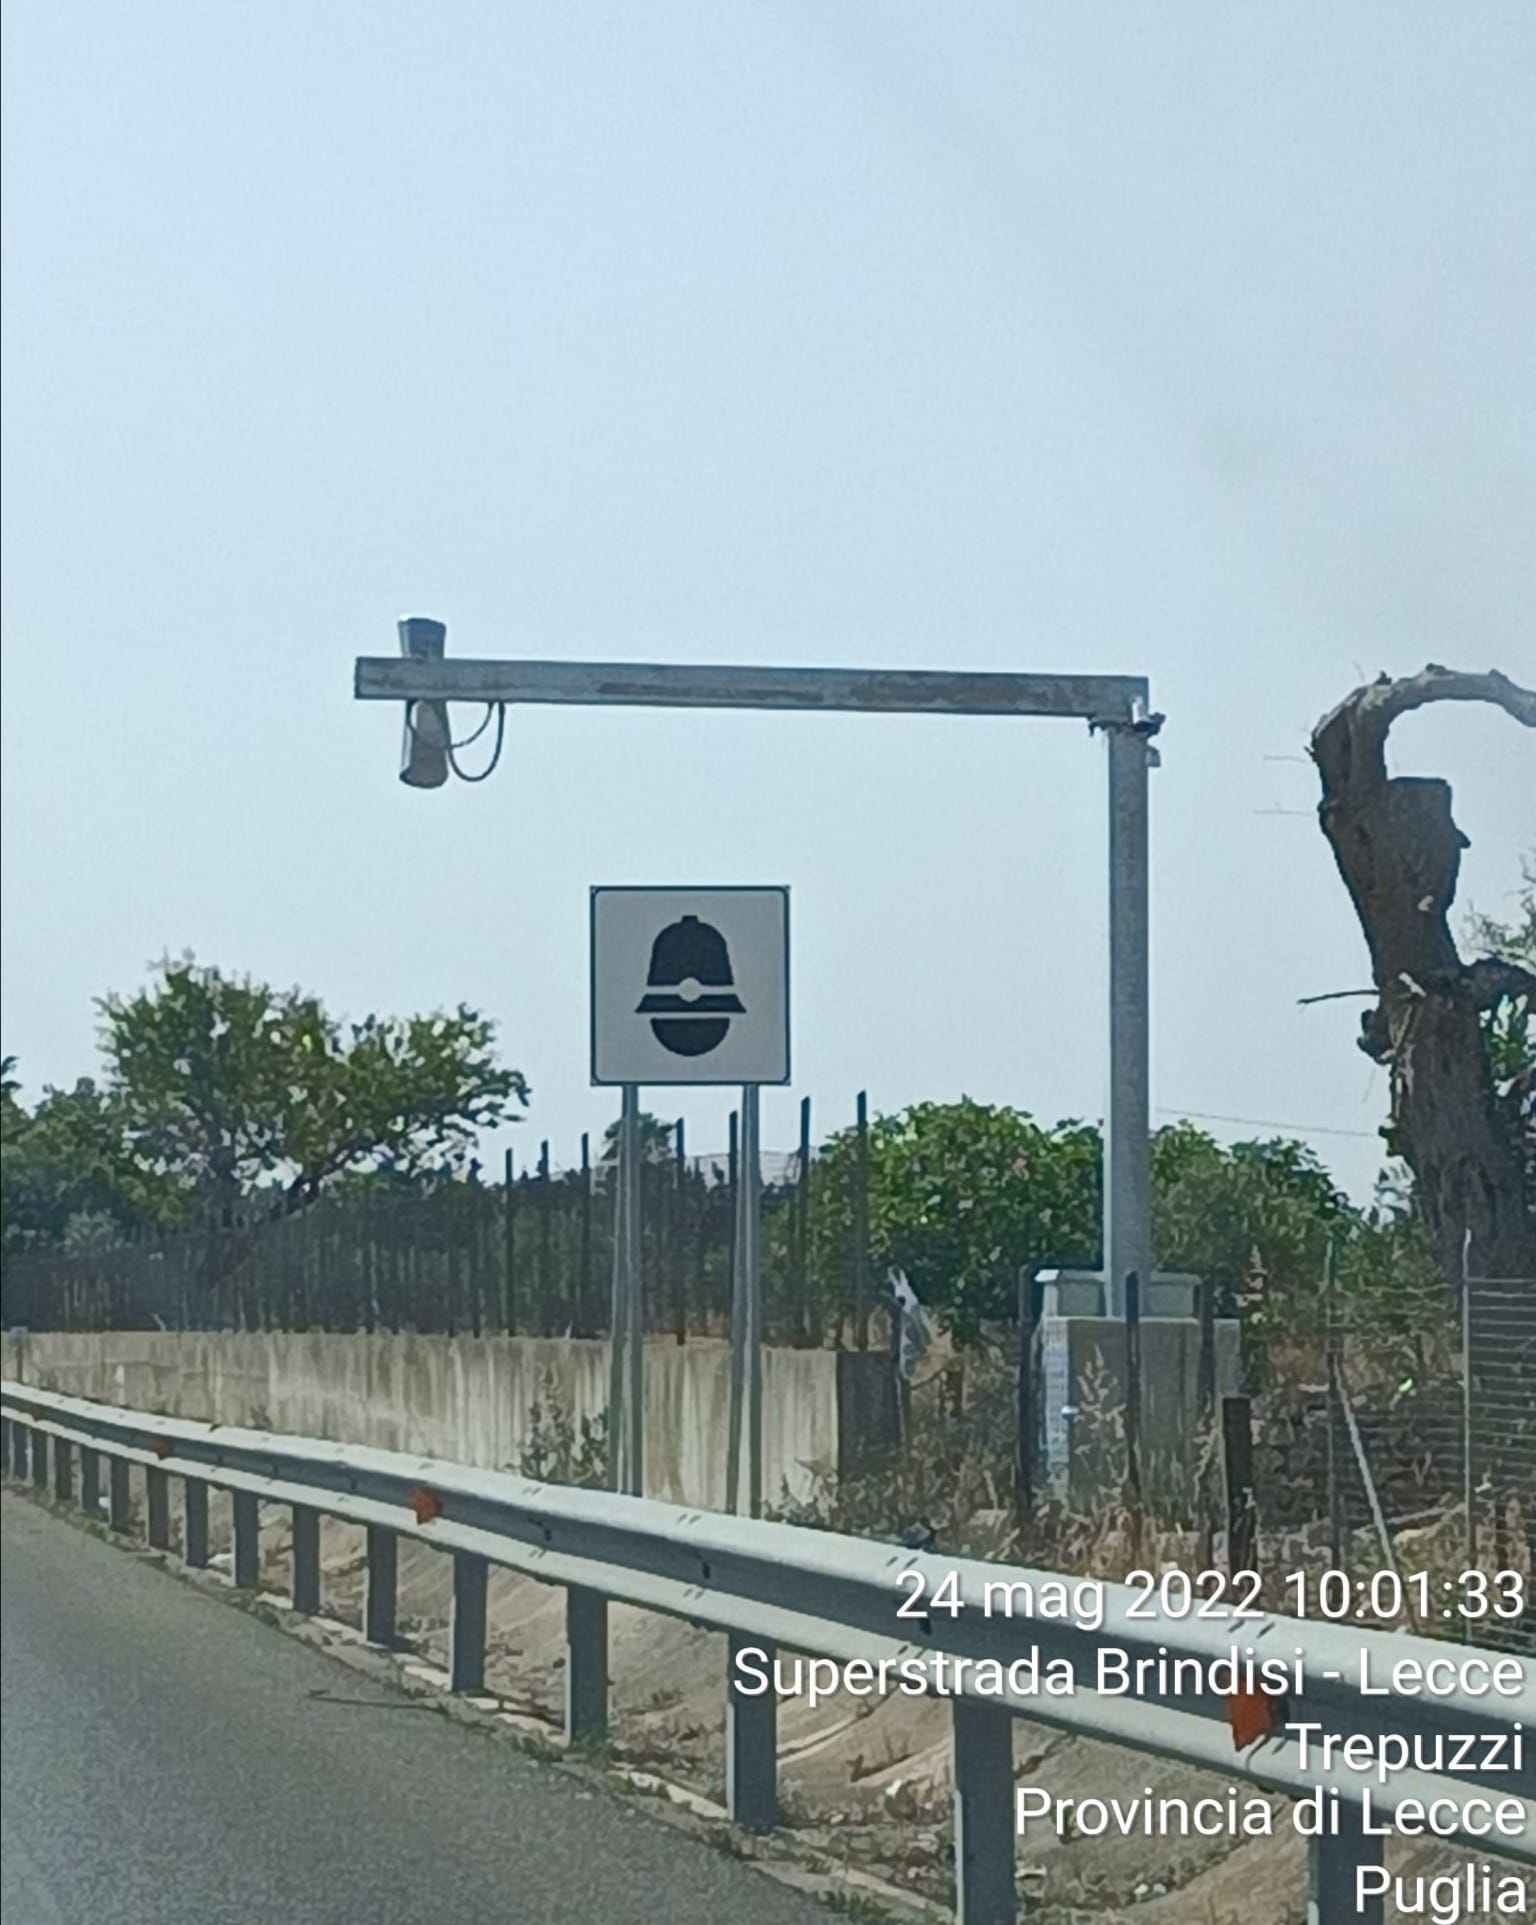 Va in funzione da oggi l' autovelox sulla superstrada Brindisi-Lecce